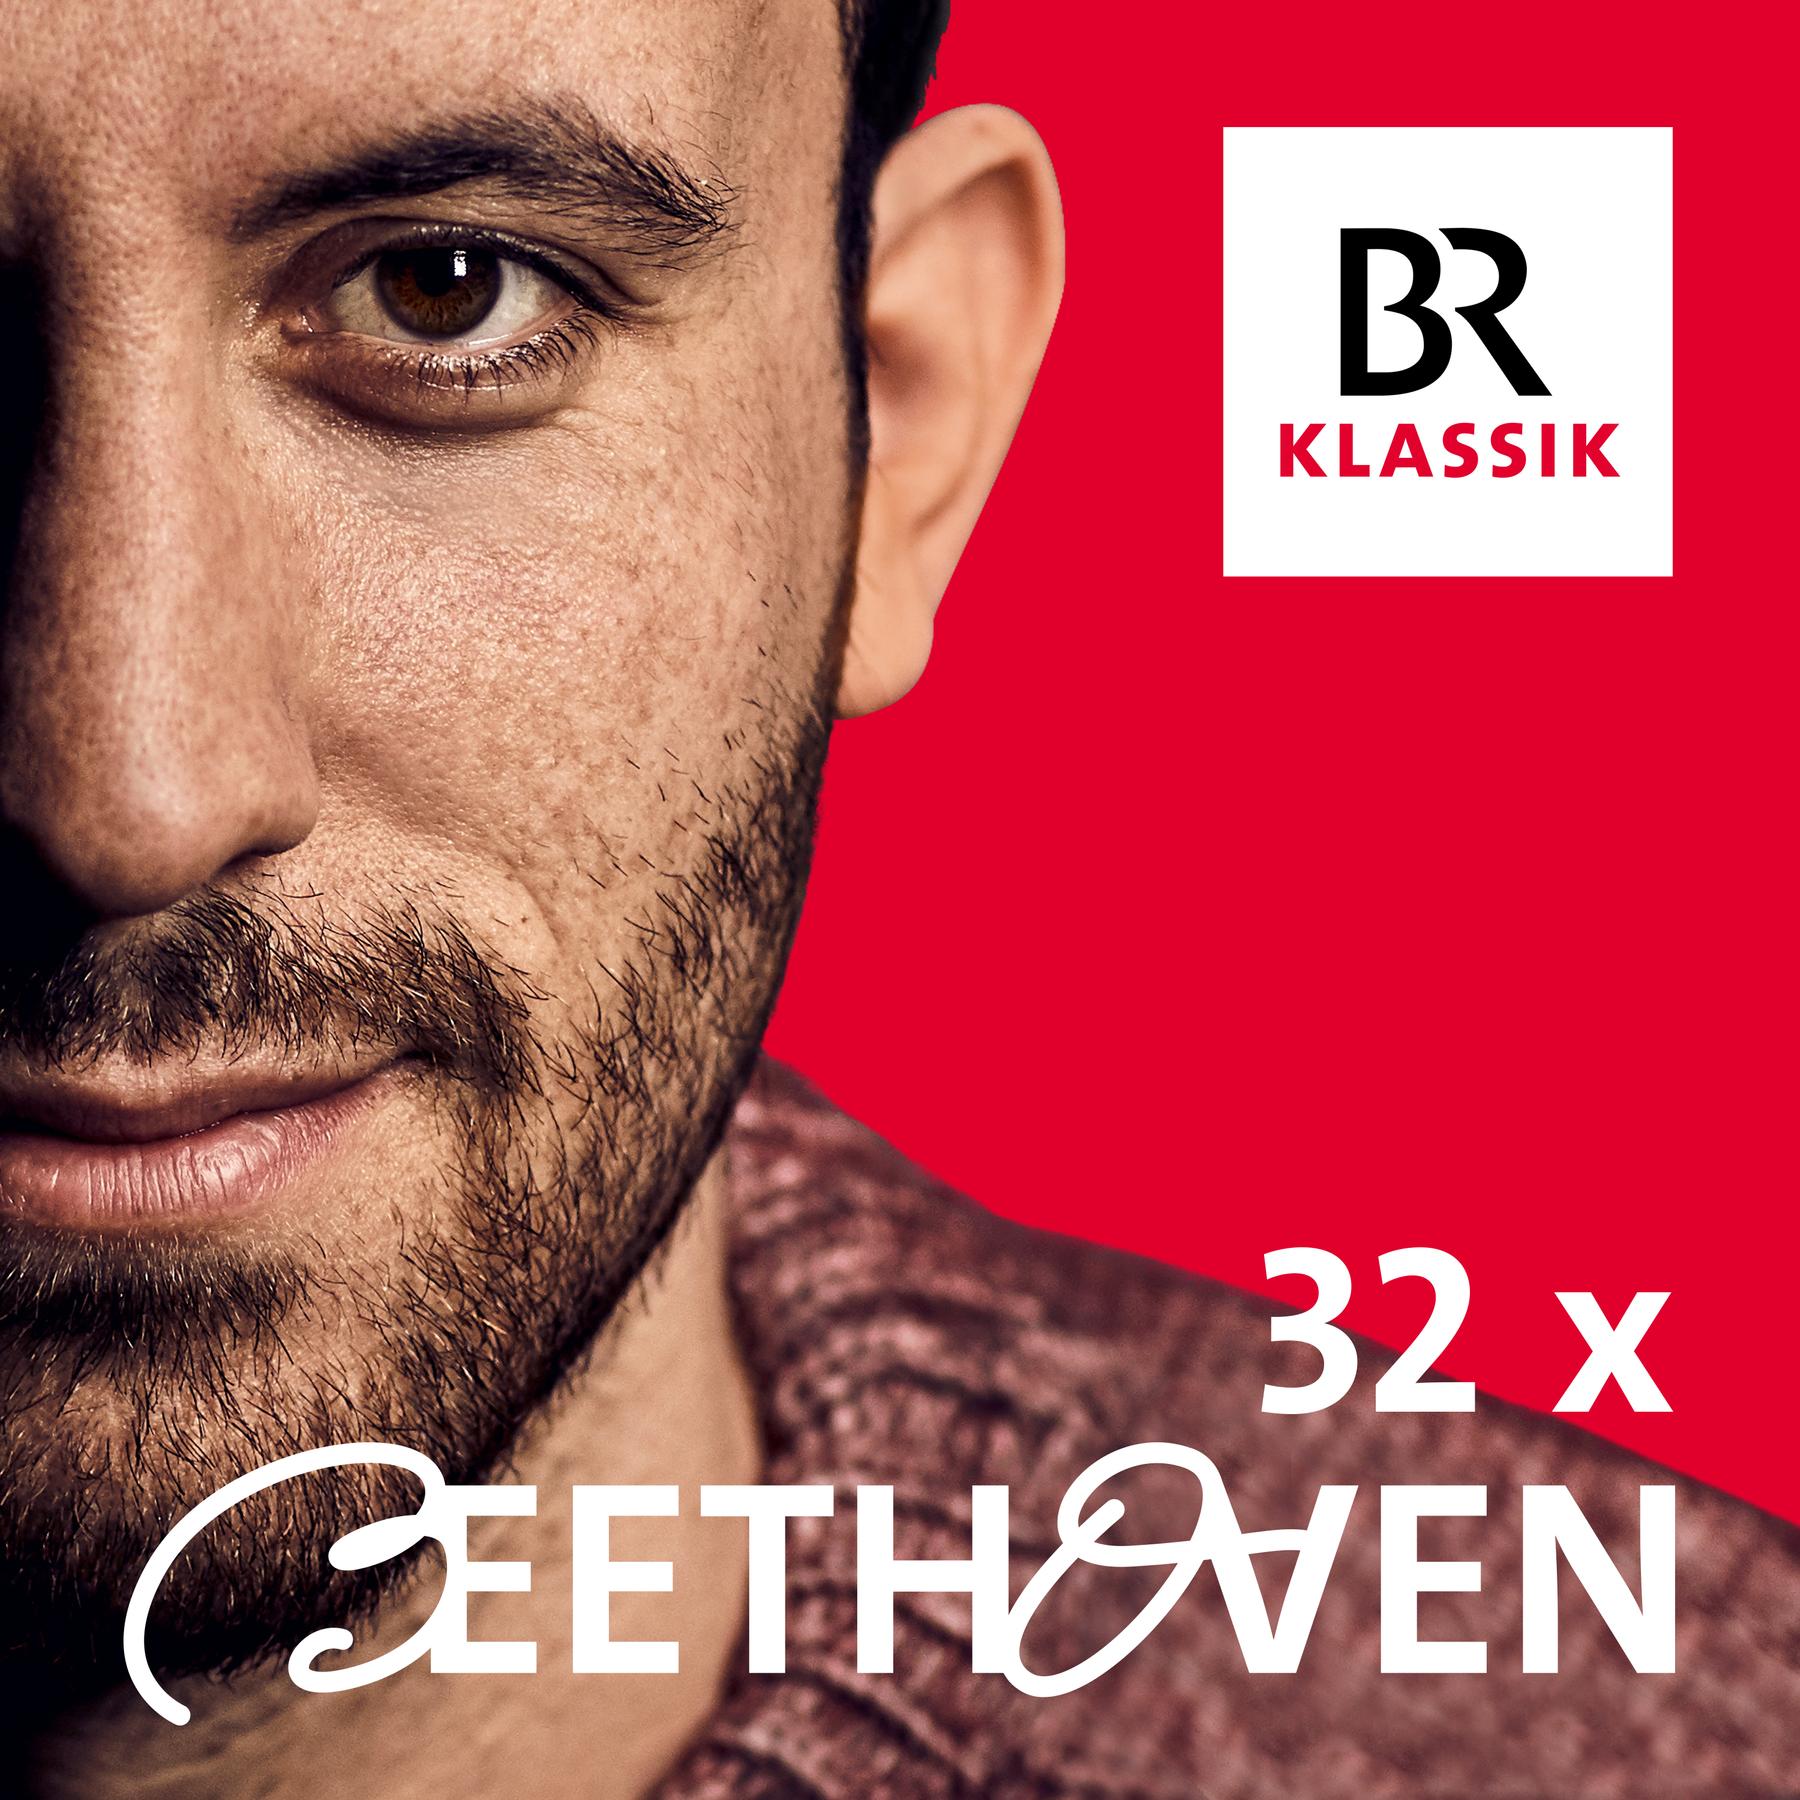 #01 Beethovens Visitenkarte - ”Ich bin da!!!” (1/32)